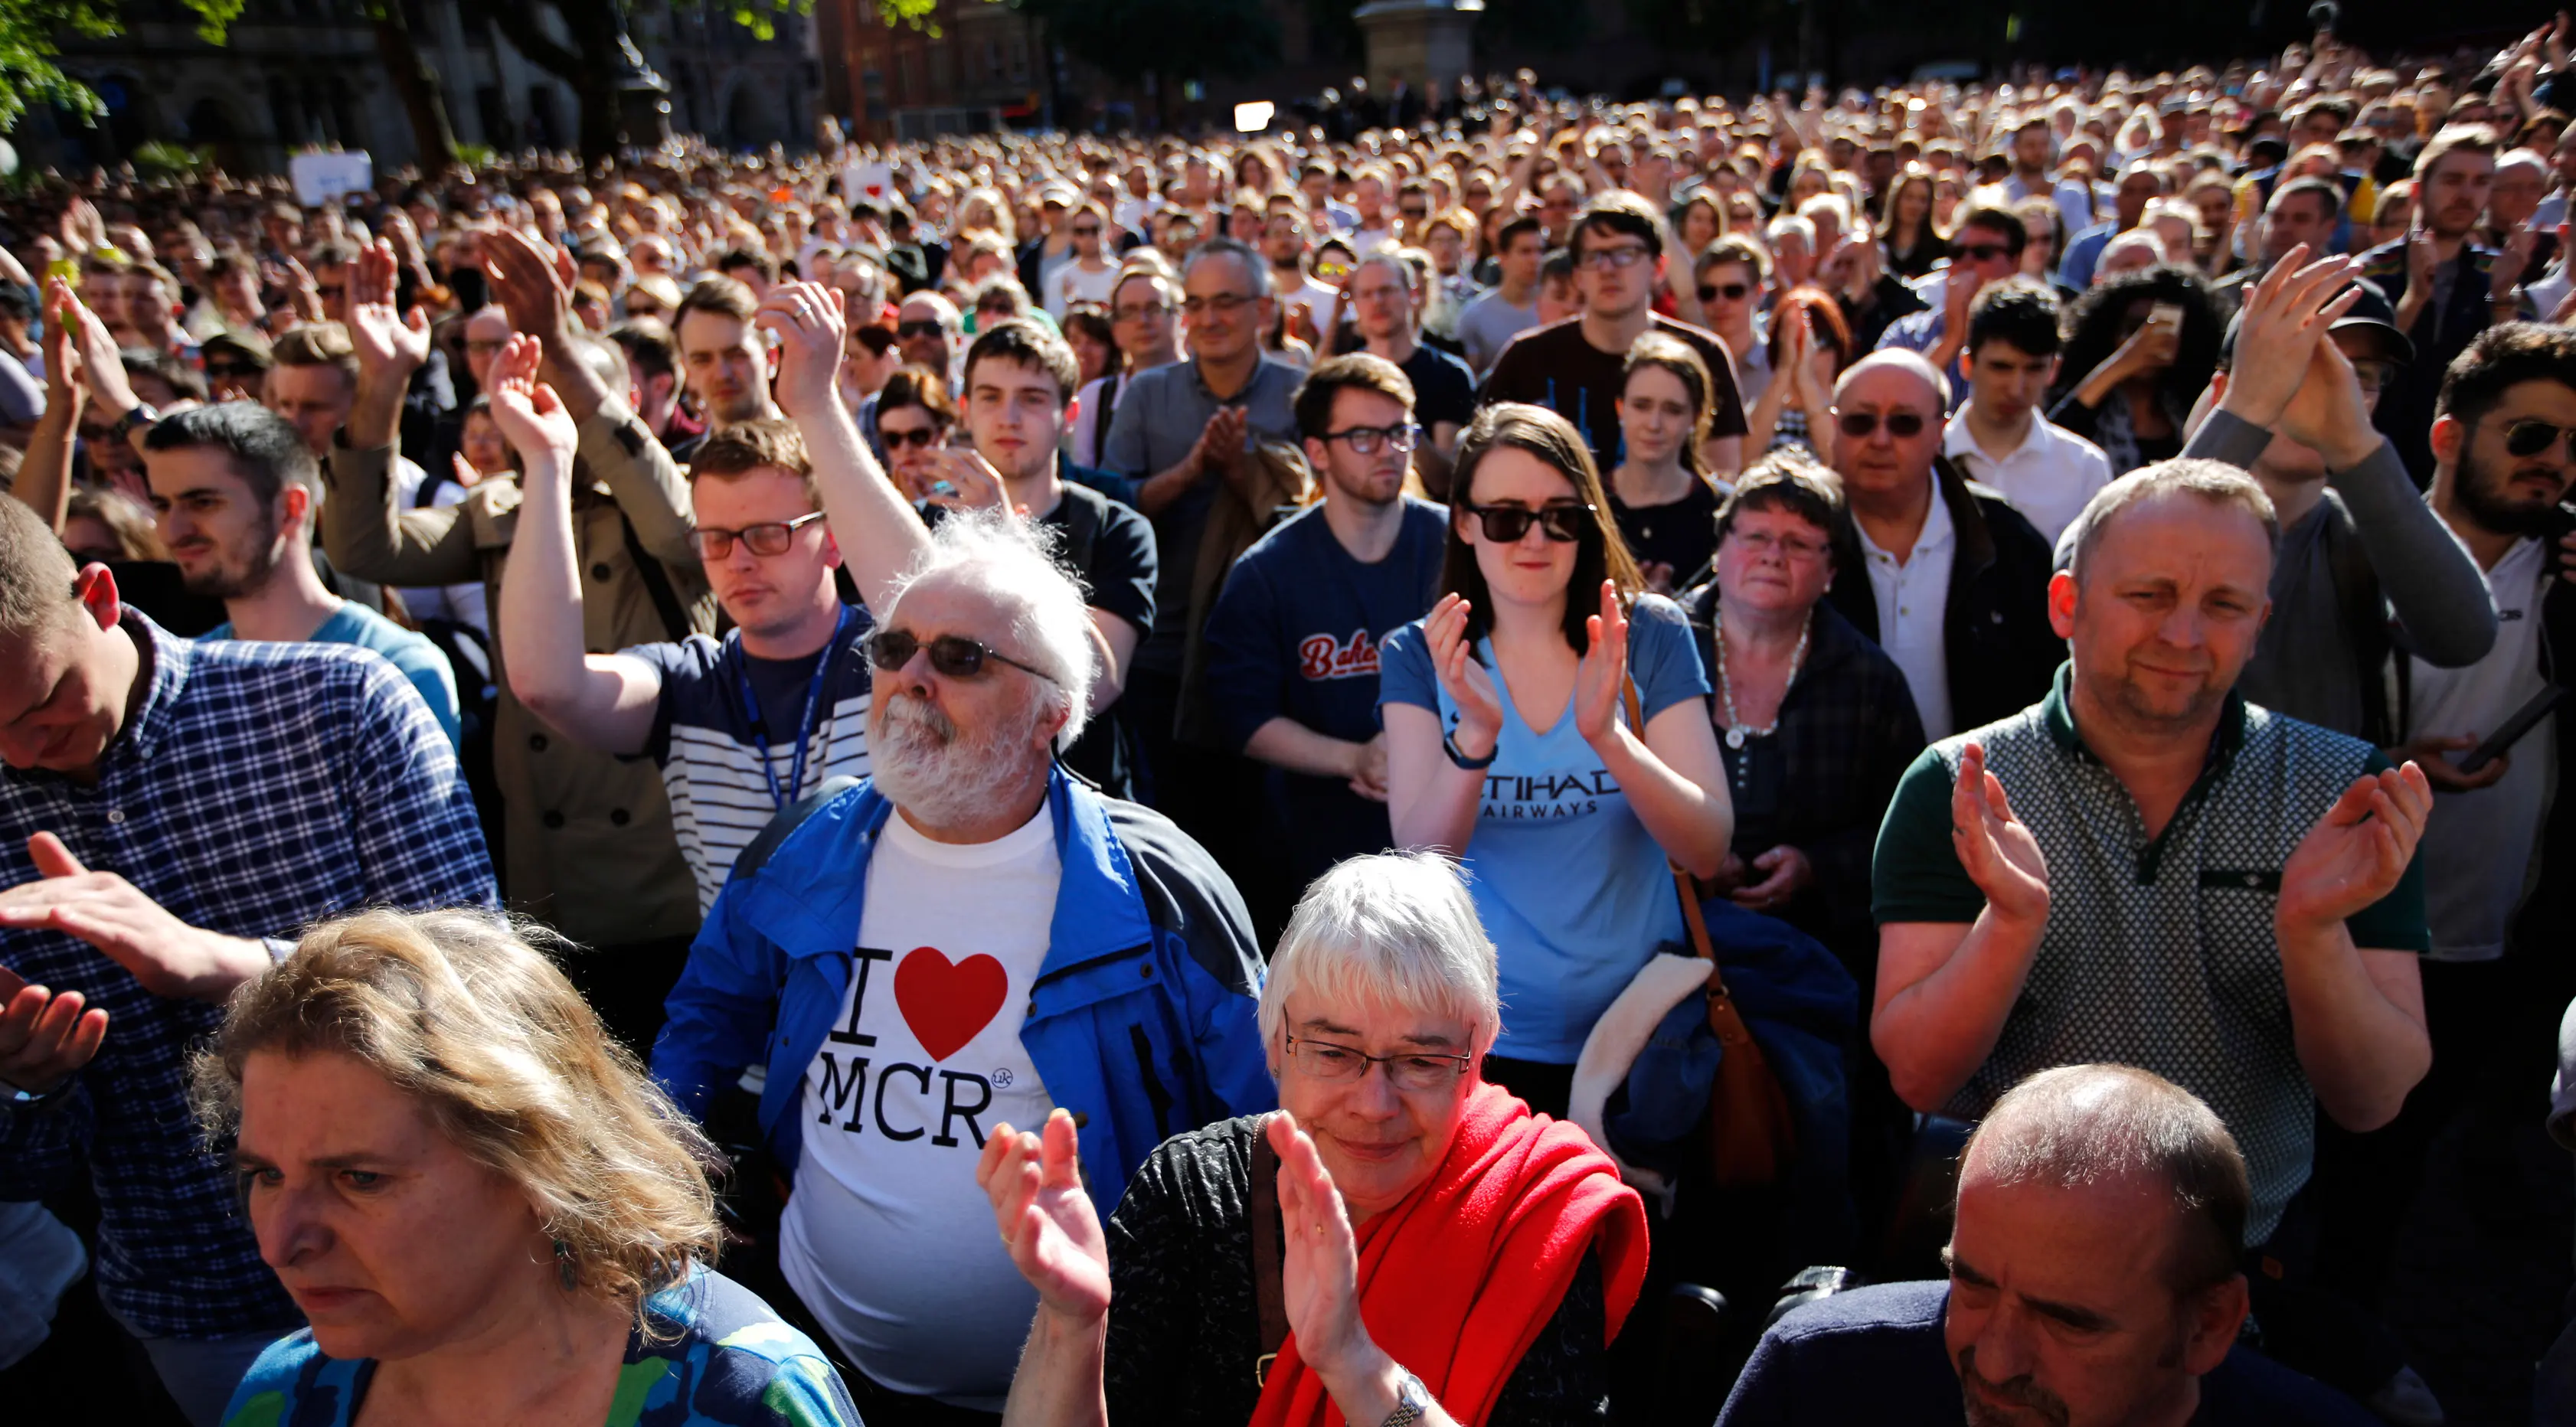 Ribuan orang memadati Albert Square di pusat kota Manchester, sehari setelah teror bom bunuh diri saat konser Ariana Grande, Selasa (23/5). Mereka menunjukkan solidaritas terhadap korban serangan bom yang menewaskan 22 orang. (AP Photo/Emilio Morenatti)